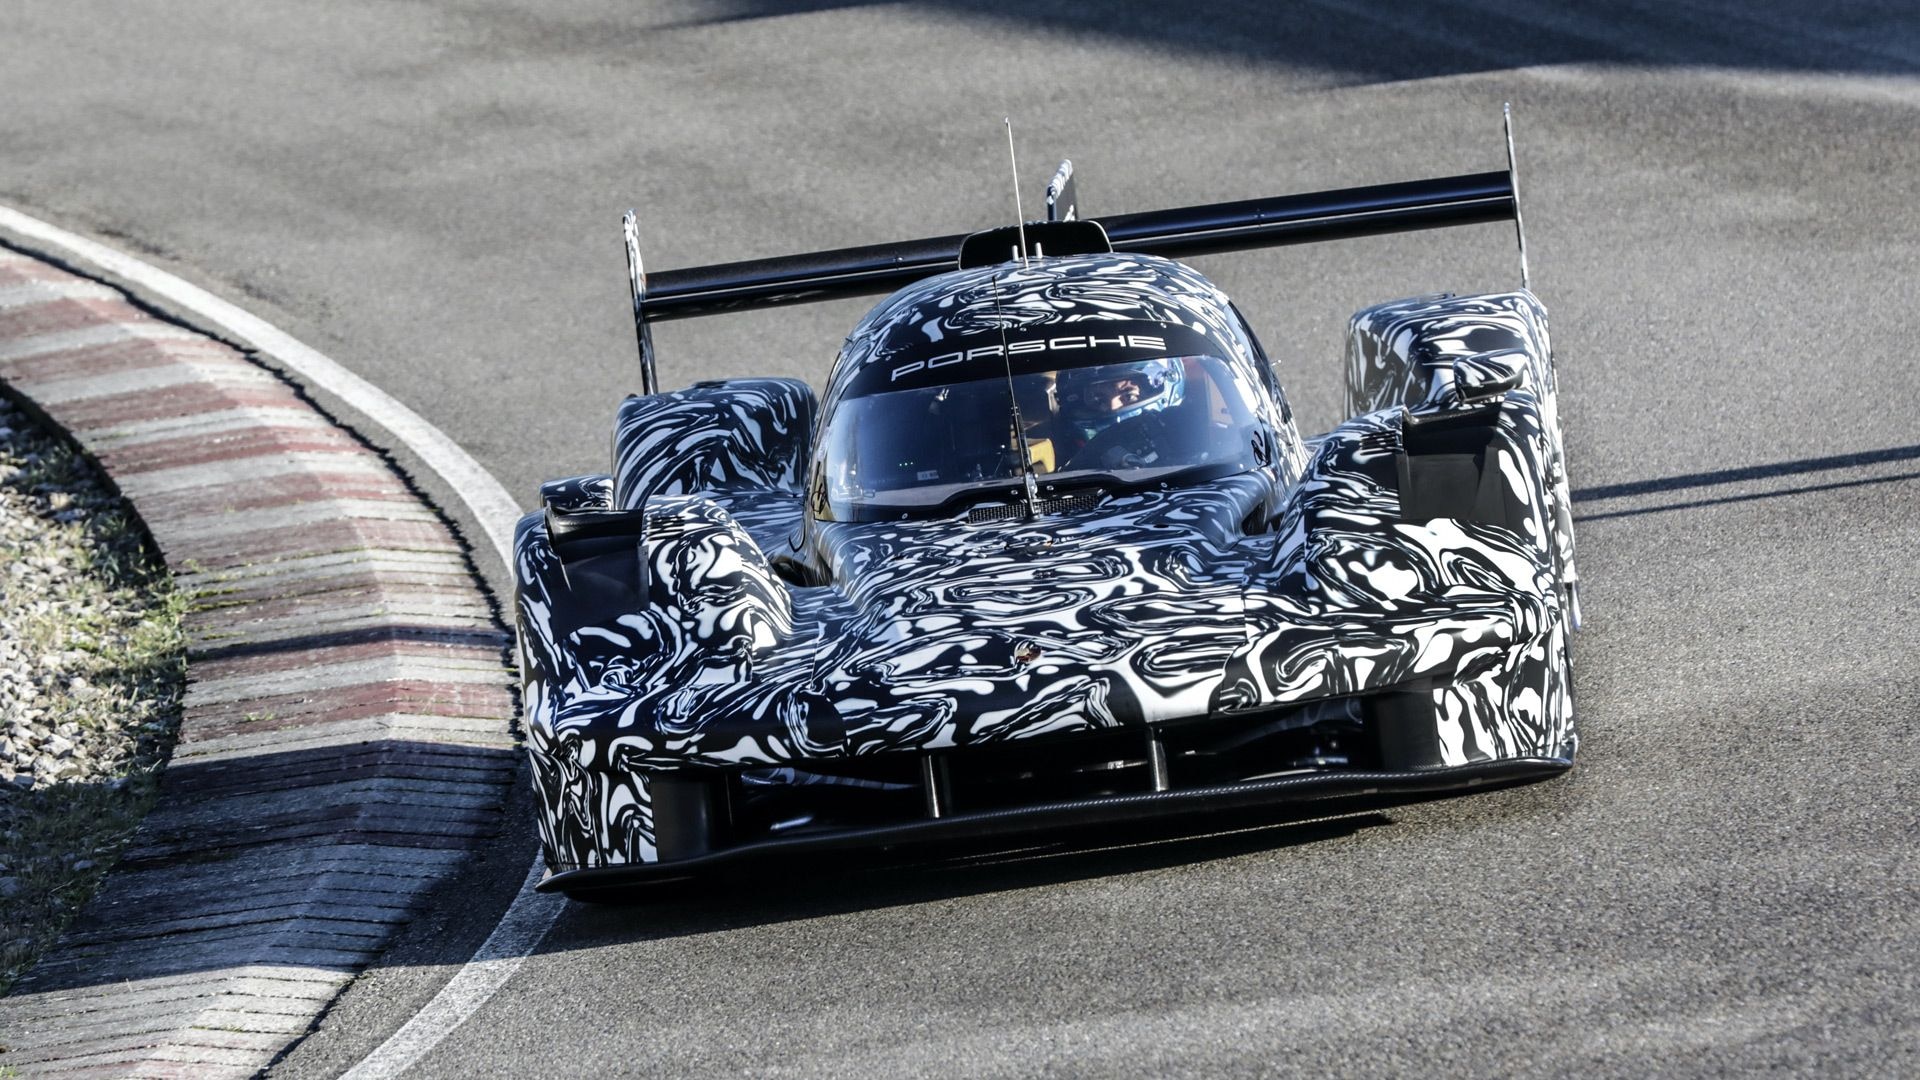 Teaser for 2023 Porsche LMDh race car